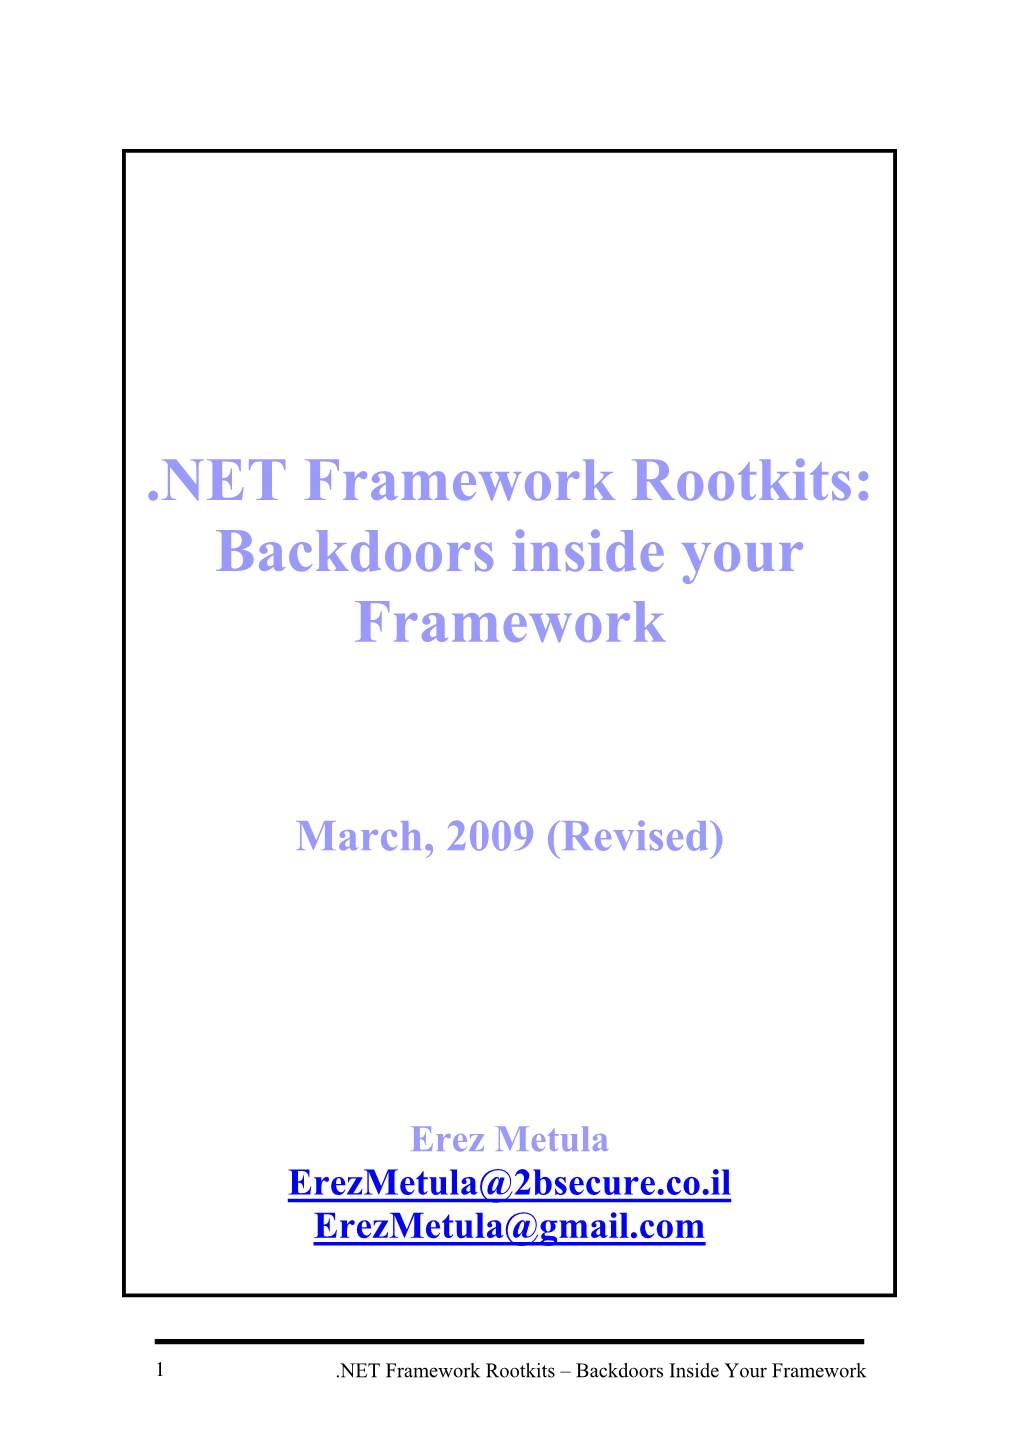 NET Framework Rootkits: Backdoors Inside Your Framework